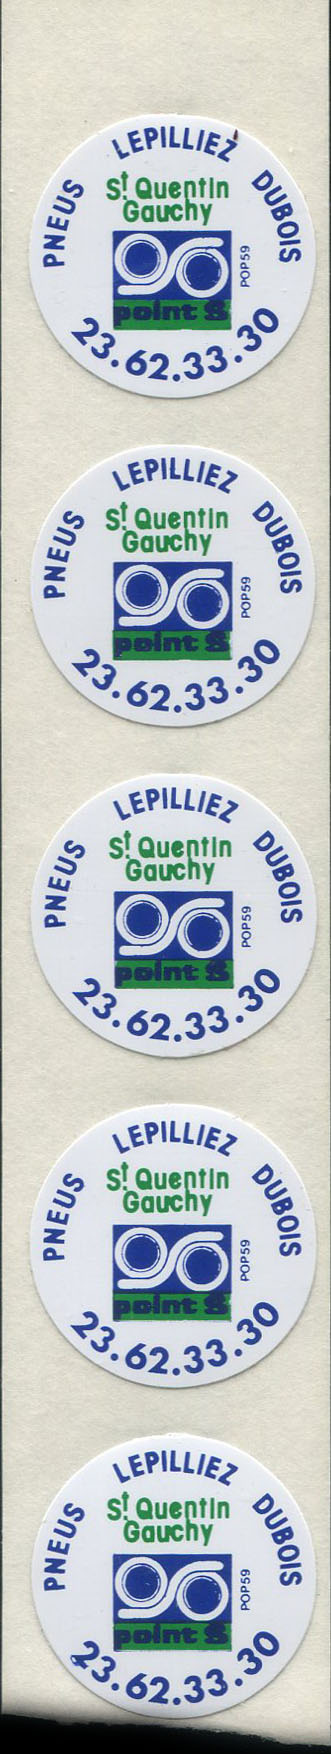 Fragment de feuille d'impression portant 5 autocollants Pneus Lepilliez Dubois - Saint-Quentin Gauchy - Point S - 23.62.33.30.